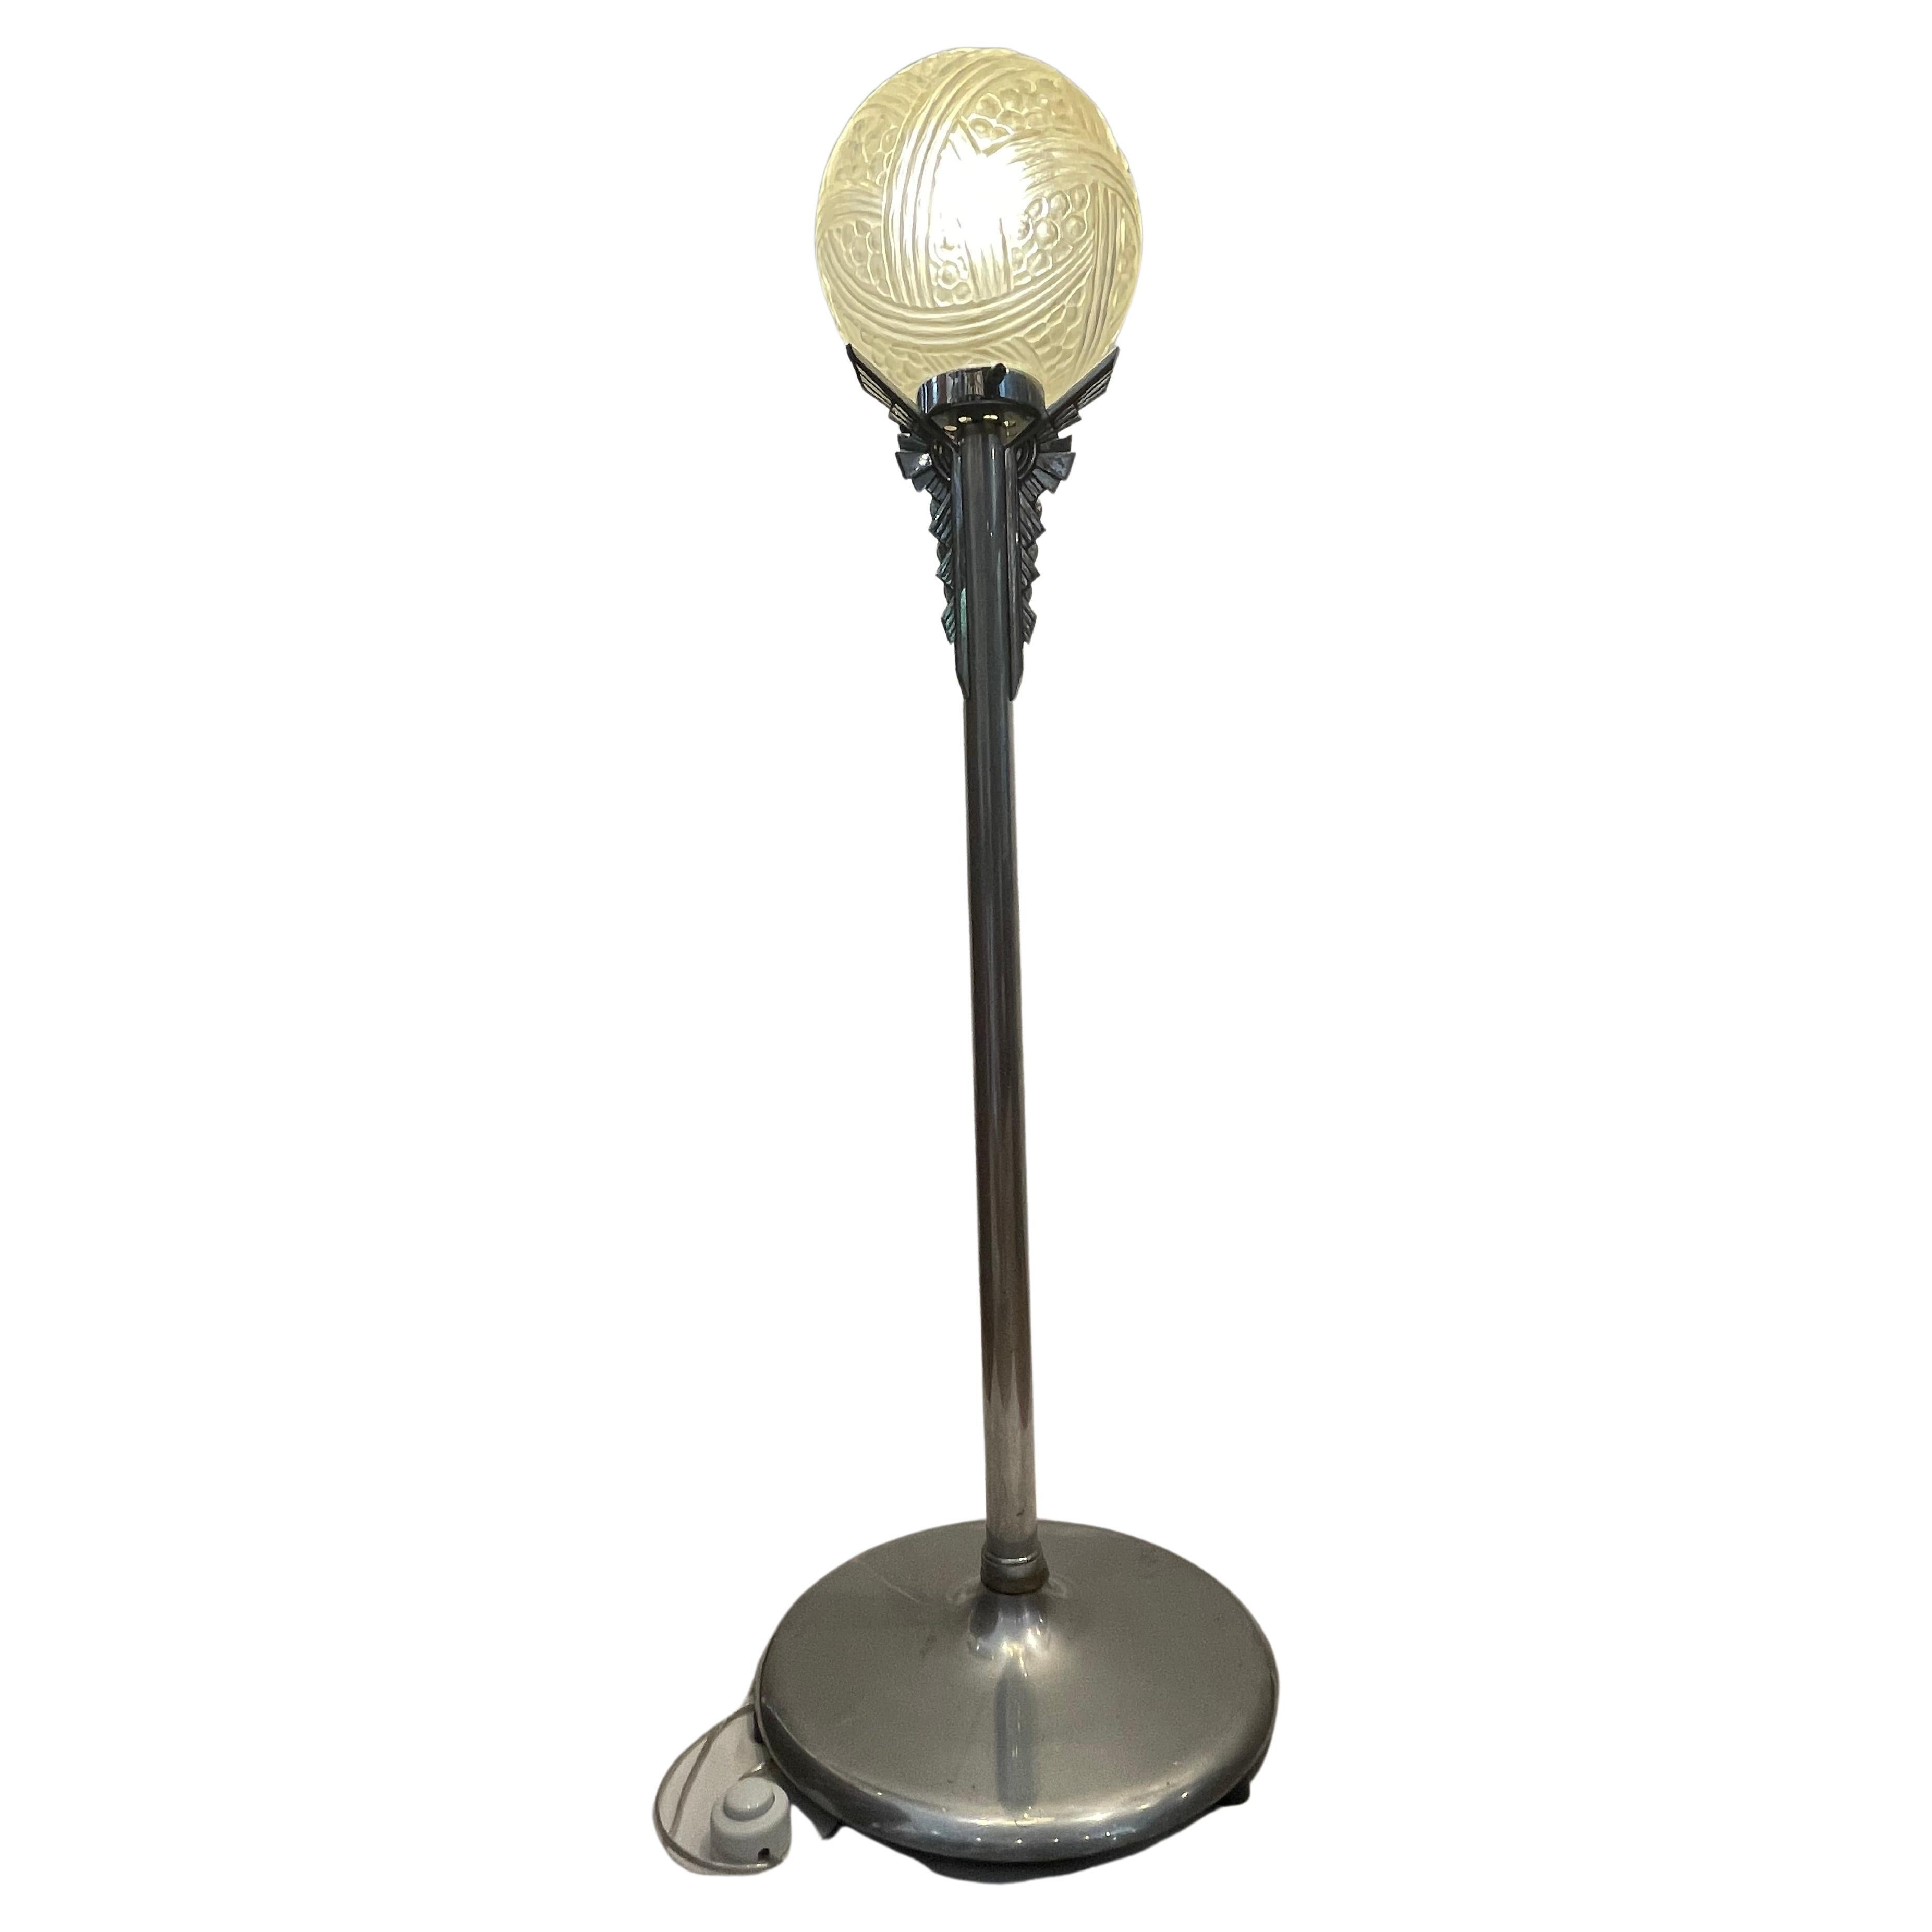 Art Deco Lampe mit Chromsockel. Die Säule ist mit einer dreidimensionalen geometrischen Verzierung versehen, das Ganze ruht auf einem breiten und stabilen Sockel.
Die gepresste Kugel in Glasform mattiert und satiniert ein Dekor, das einen ganz